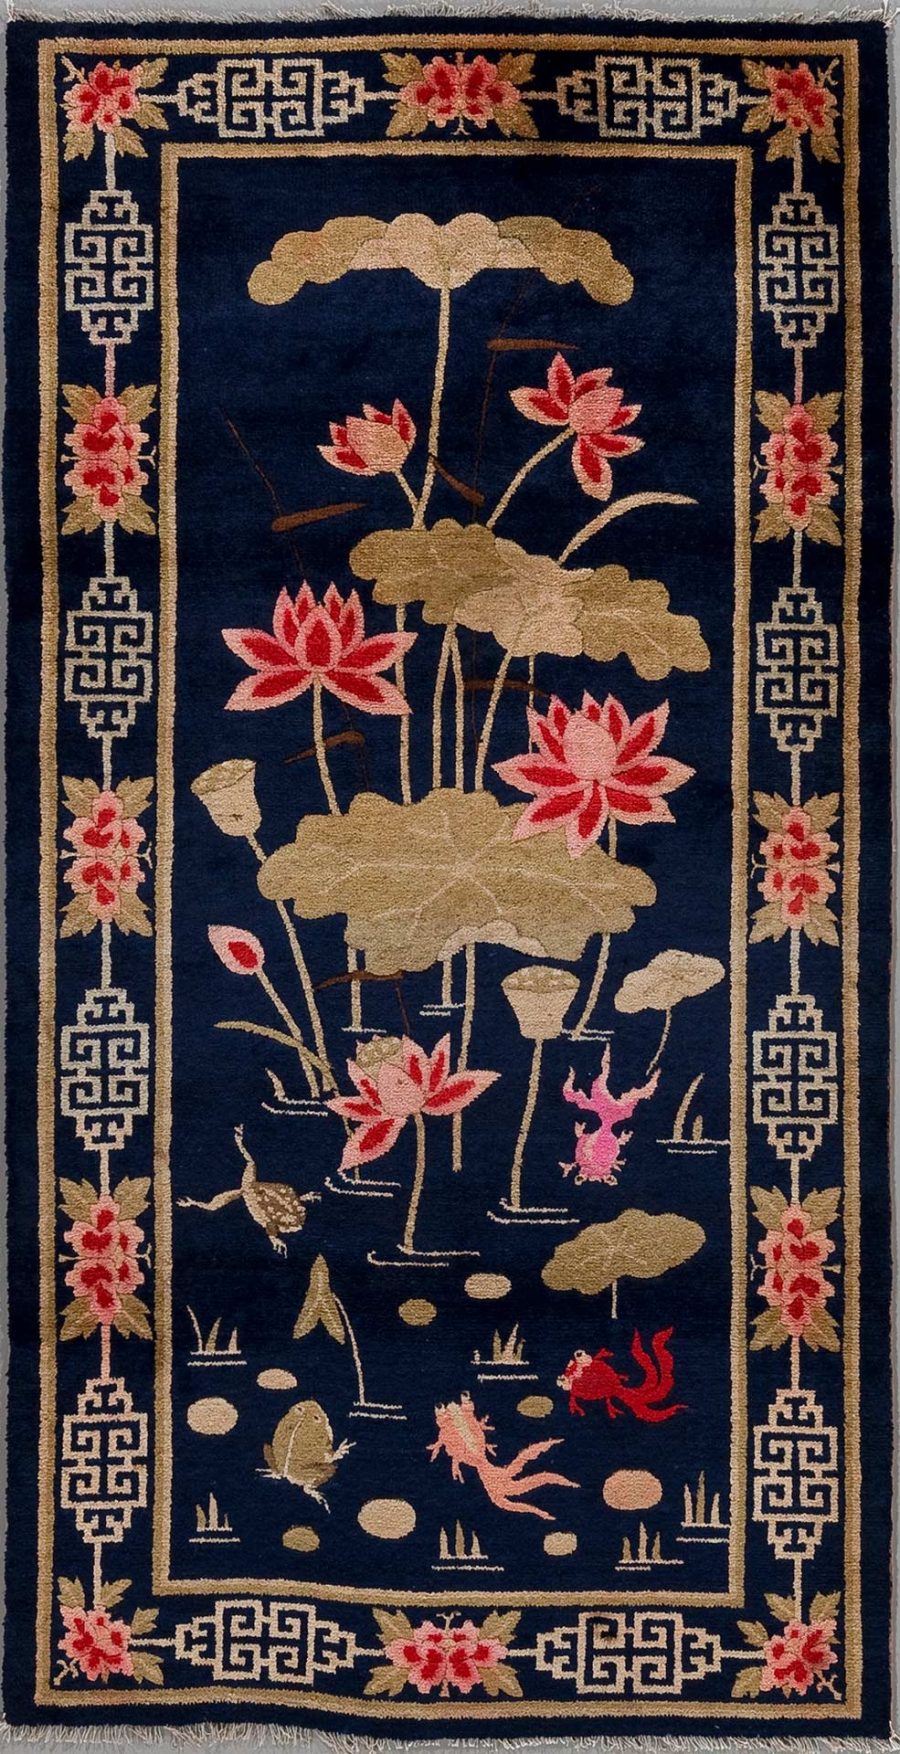 Orientalischer Teppich mit dunkelblauem Hintergrund und asiatischen Motiven, darunter Lotusblüten in Rosa und Beige, Seerosenblätter, sowie stilisierte Karpfen und Frösche in Pink und Beige. Umrandet von einem beige-blauen Rand mit griechischen Schlüsselmotiven und floralen Elementen in den Ecken.